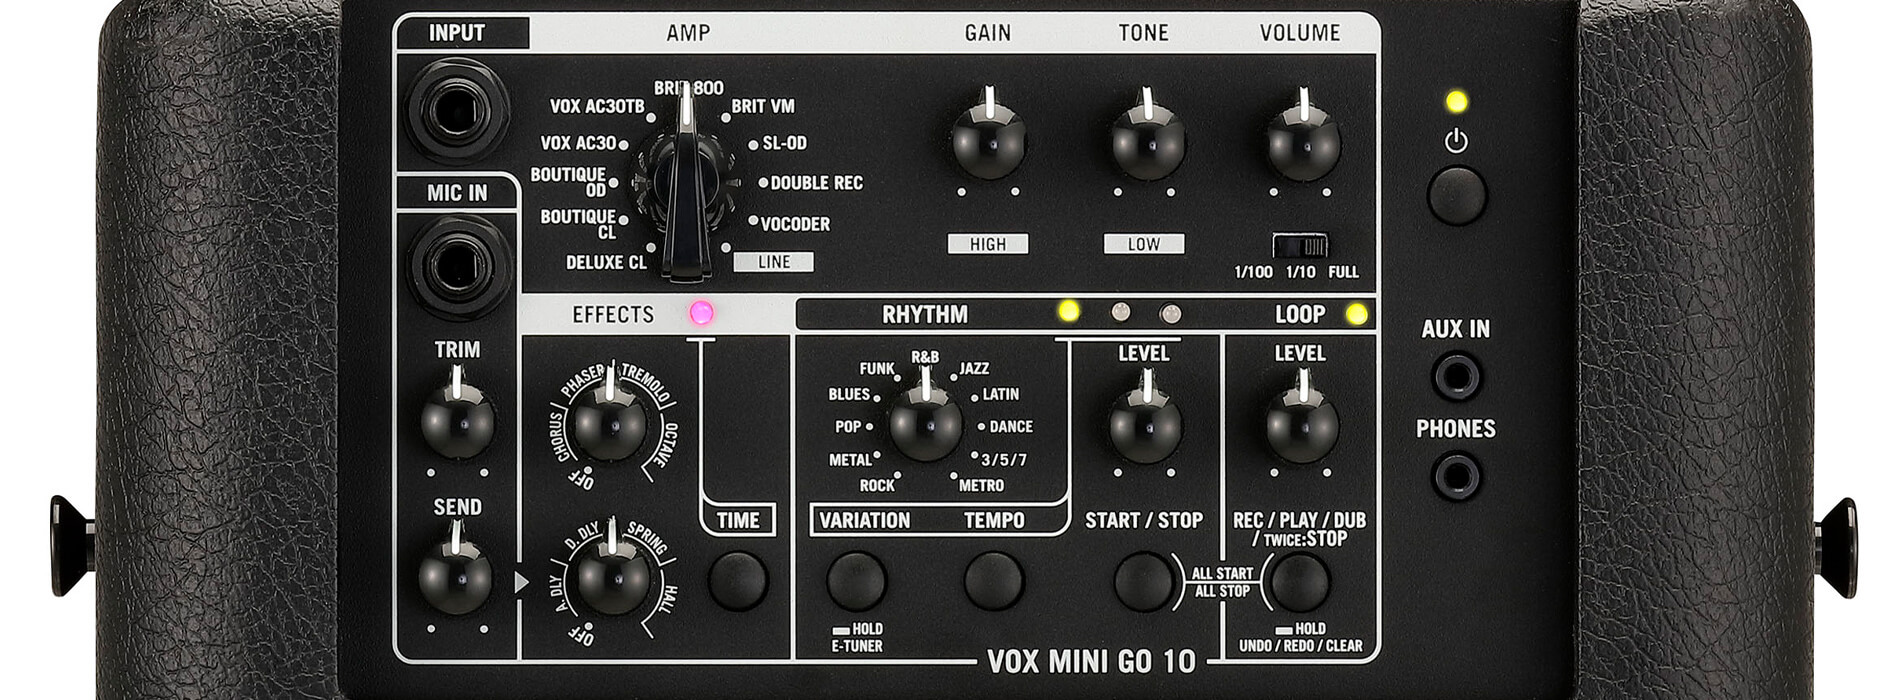 top control panel of Vox Mini Go10 guitar amp